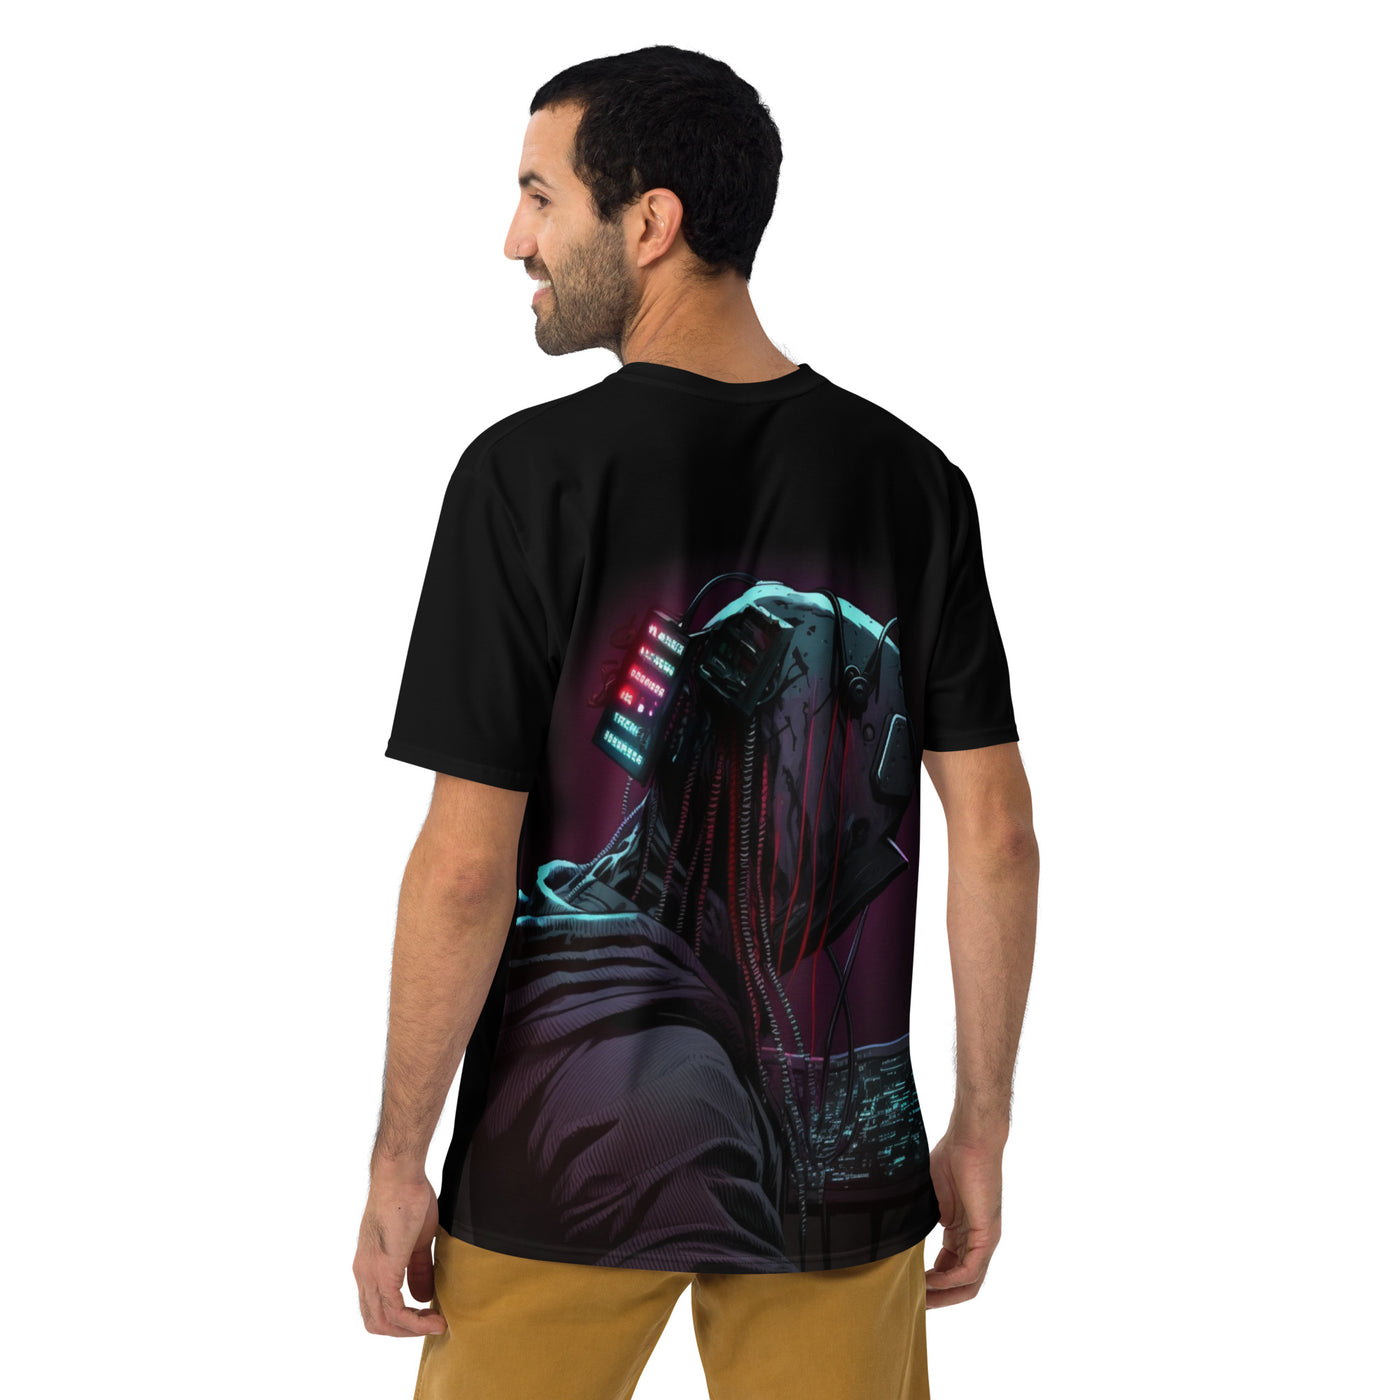 Cyberware assassin v3 - Men's t-shirt (back print)